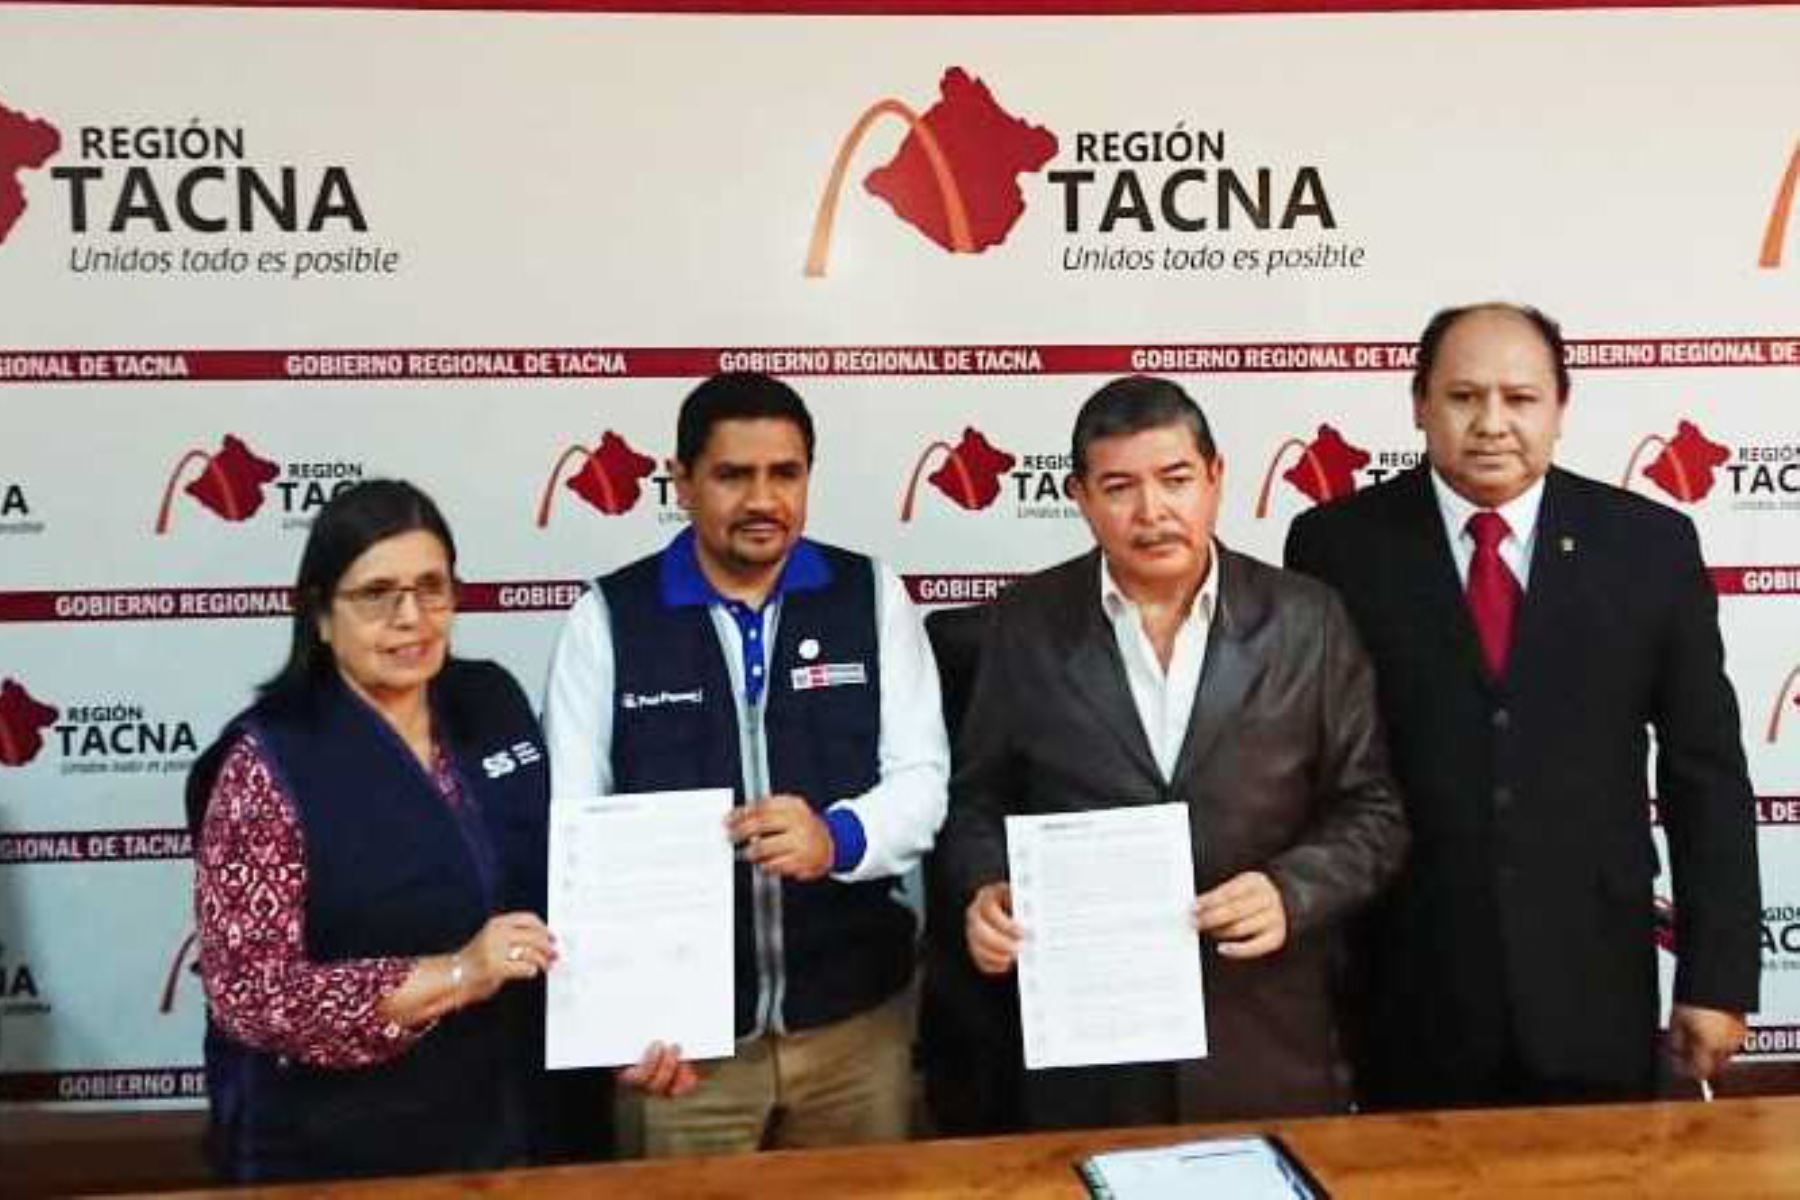 El Seguro Integral de Salud (SIS) y el Gobierno Regional de Tacna suscribieron una adenda al Convenio de Compra de Servicios, con el objetivo de garantizar el financiamiento de la atención médica de más de 150,000 afiliados al SIS en la región sureña.